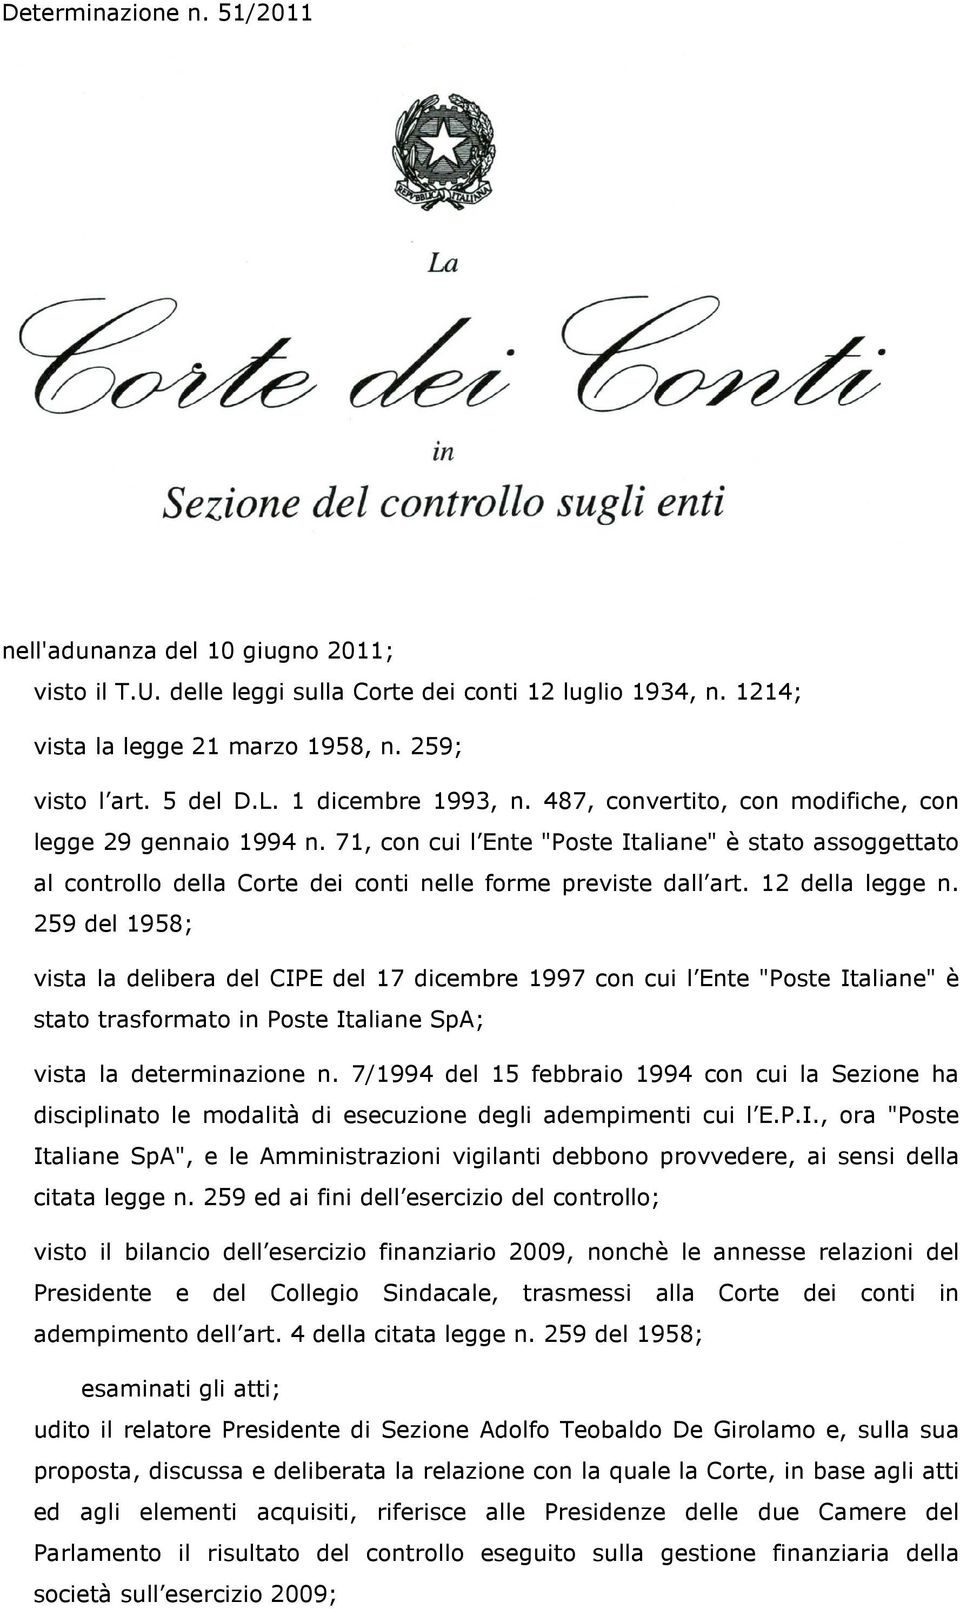 71, con cui l Ente "Poste Italiane" è stato assoggettato al controllo della Corte dei conti nelle forme previste dall art. 12 della legge n.